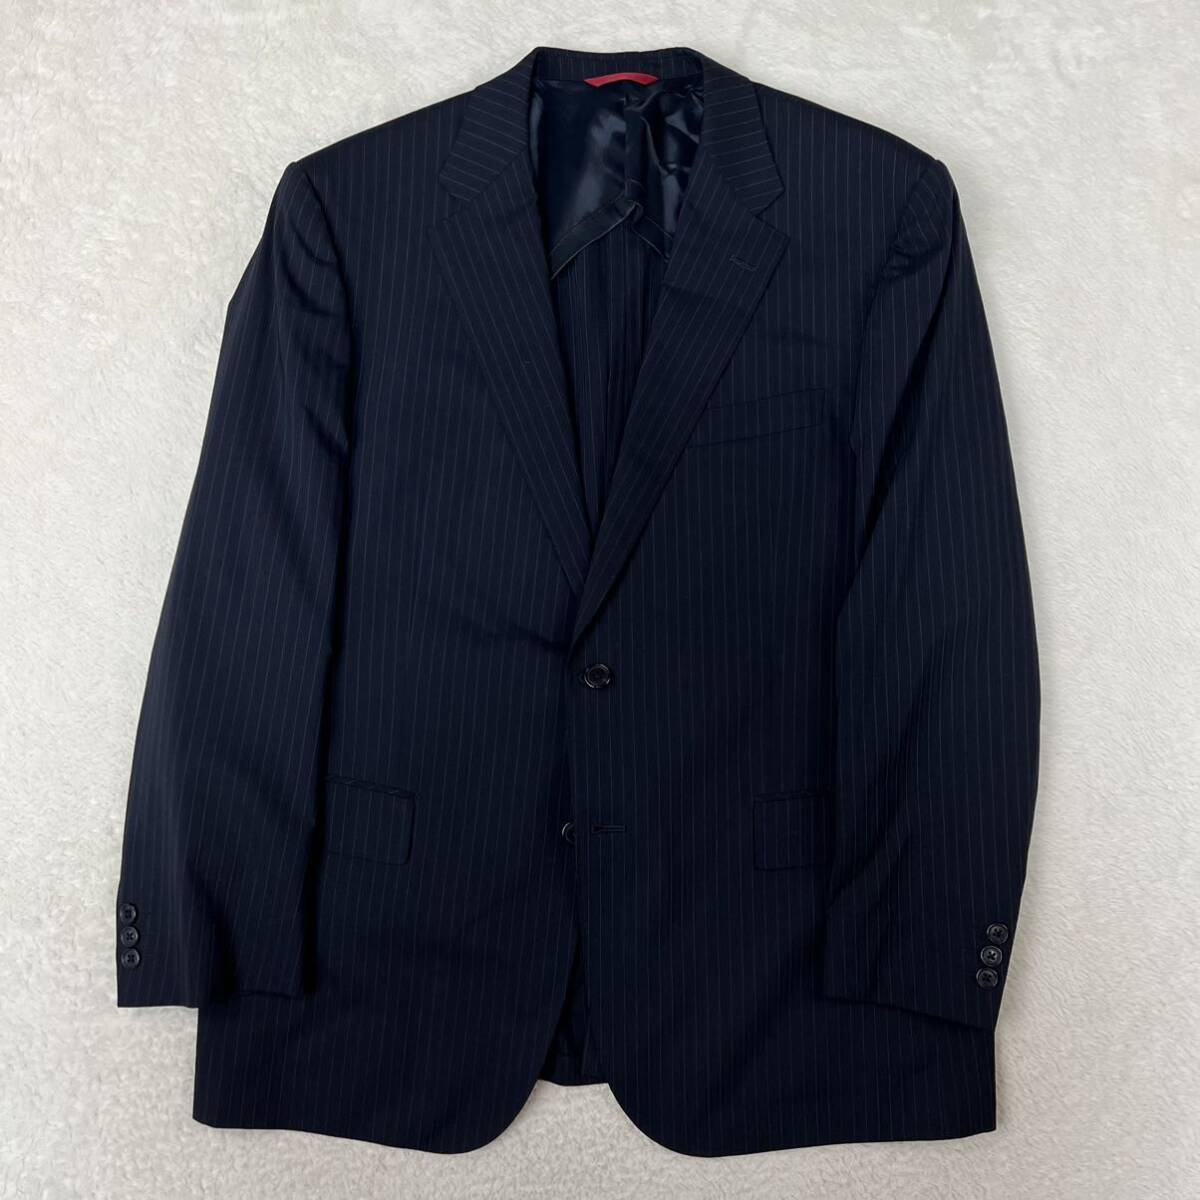 KANSAIYAMAMOTO カンサイヤマモト 上下セットアップスーツ 紳士服 ストライプスーツ ビジネス 入学式 紳士服 ウール 大きいサイズ BE7_画像2